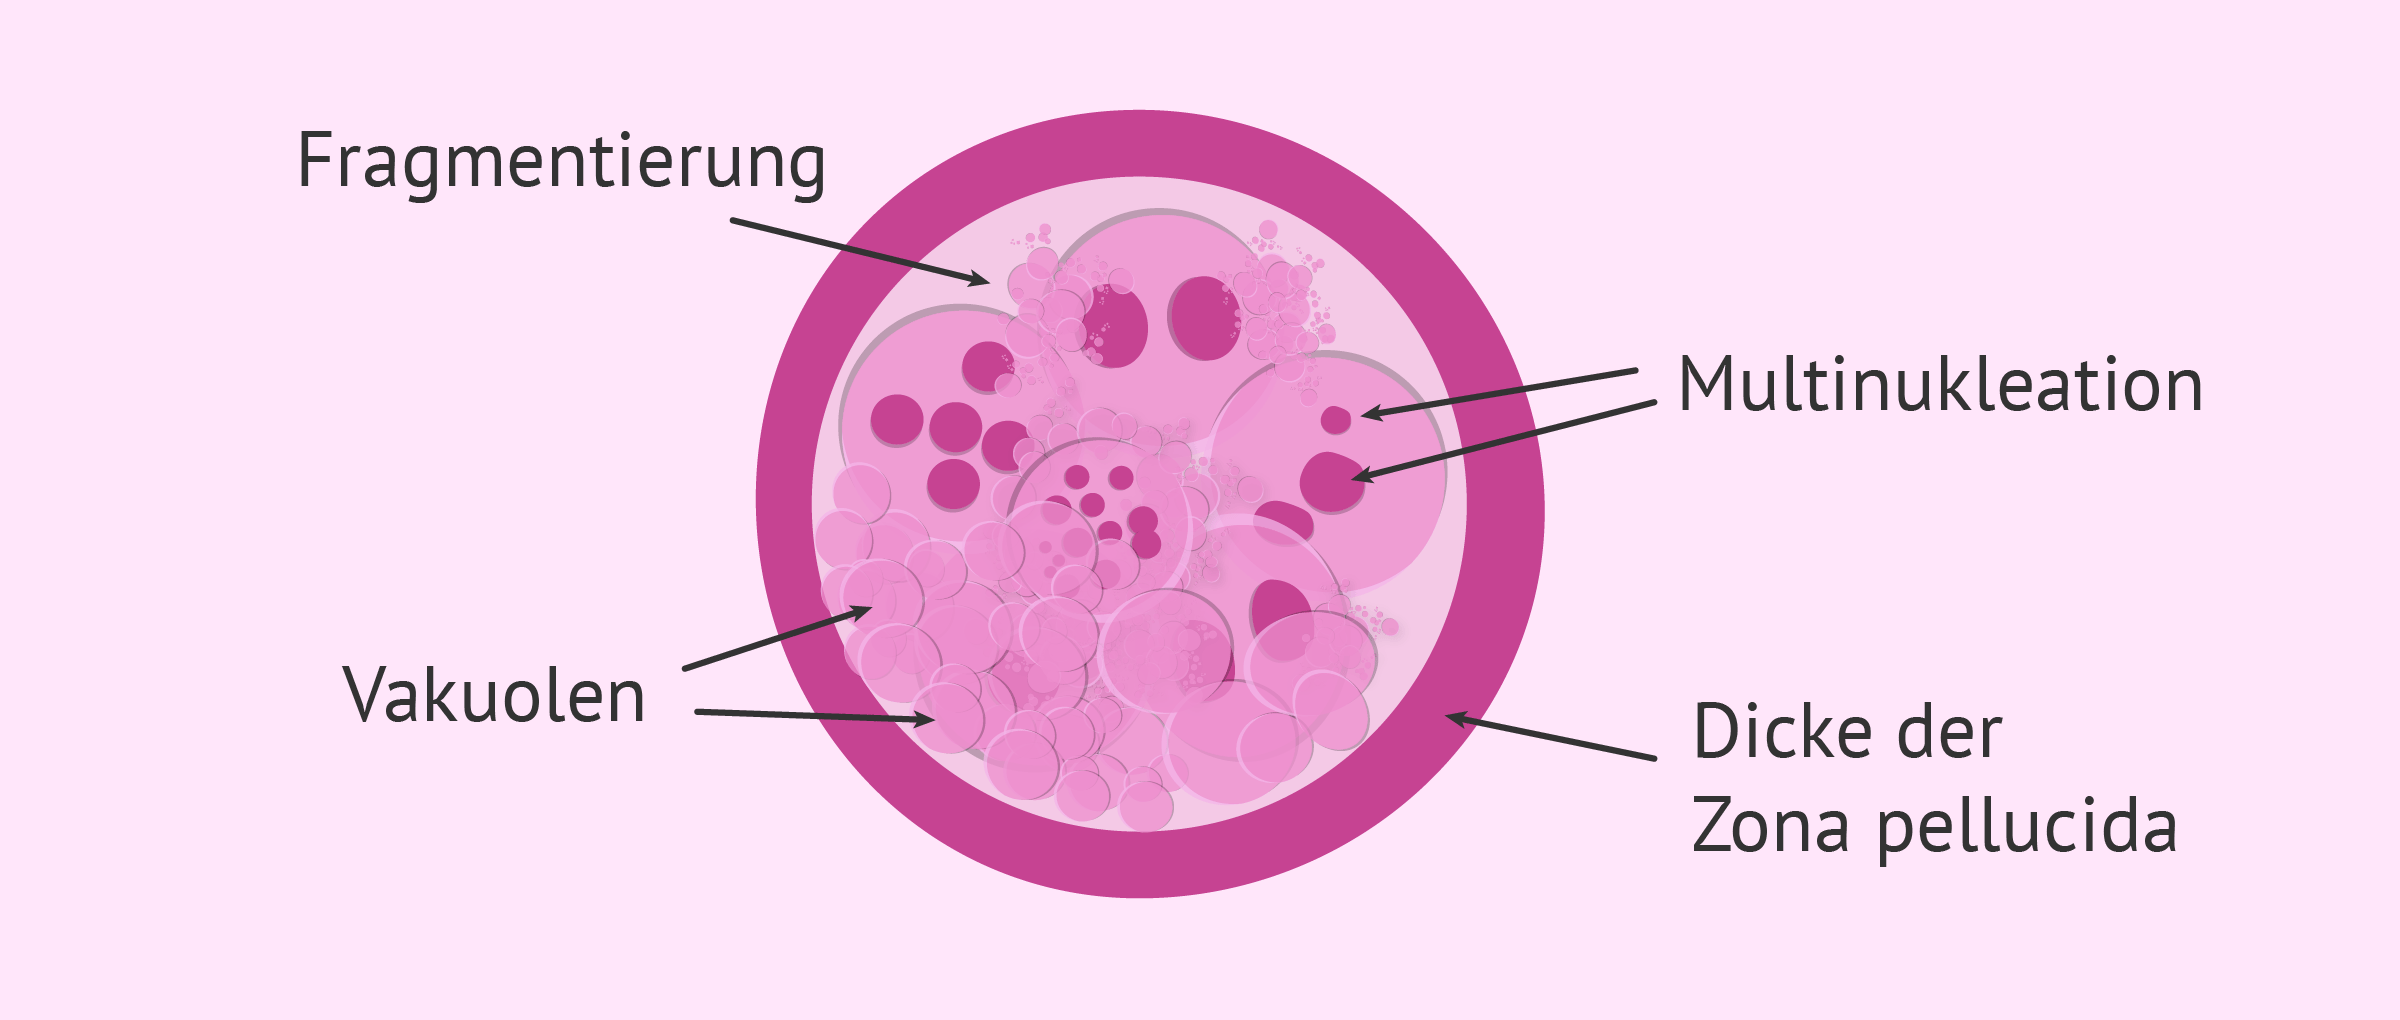 Morphologische Kriterien zur Embryoklassifizierung